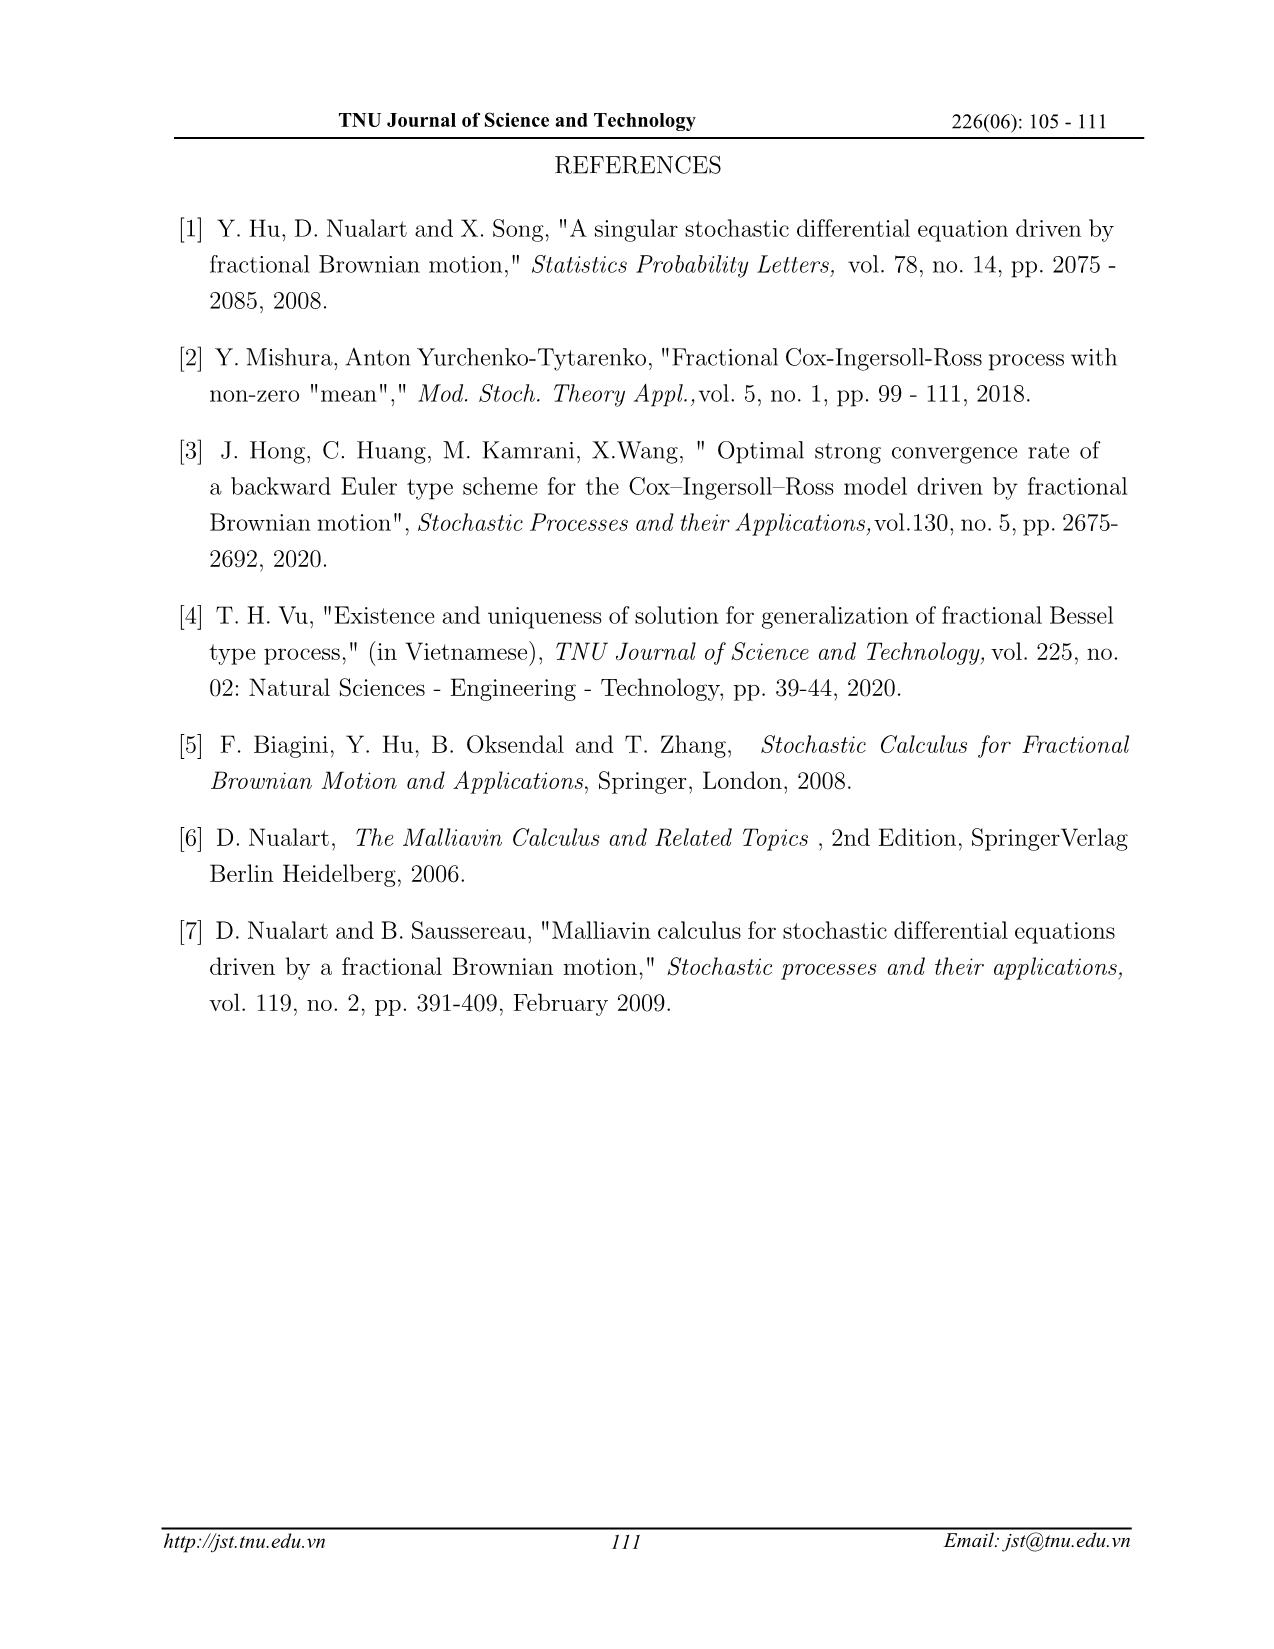 Đạo hàm Malliavin của quá trình Bessel phân thứ dạng tổng quát trang 7